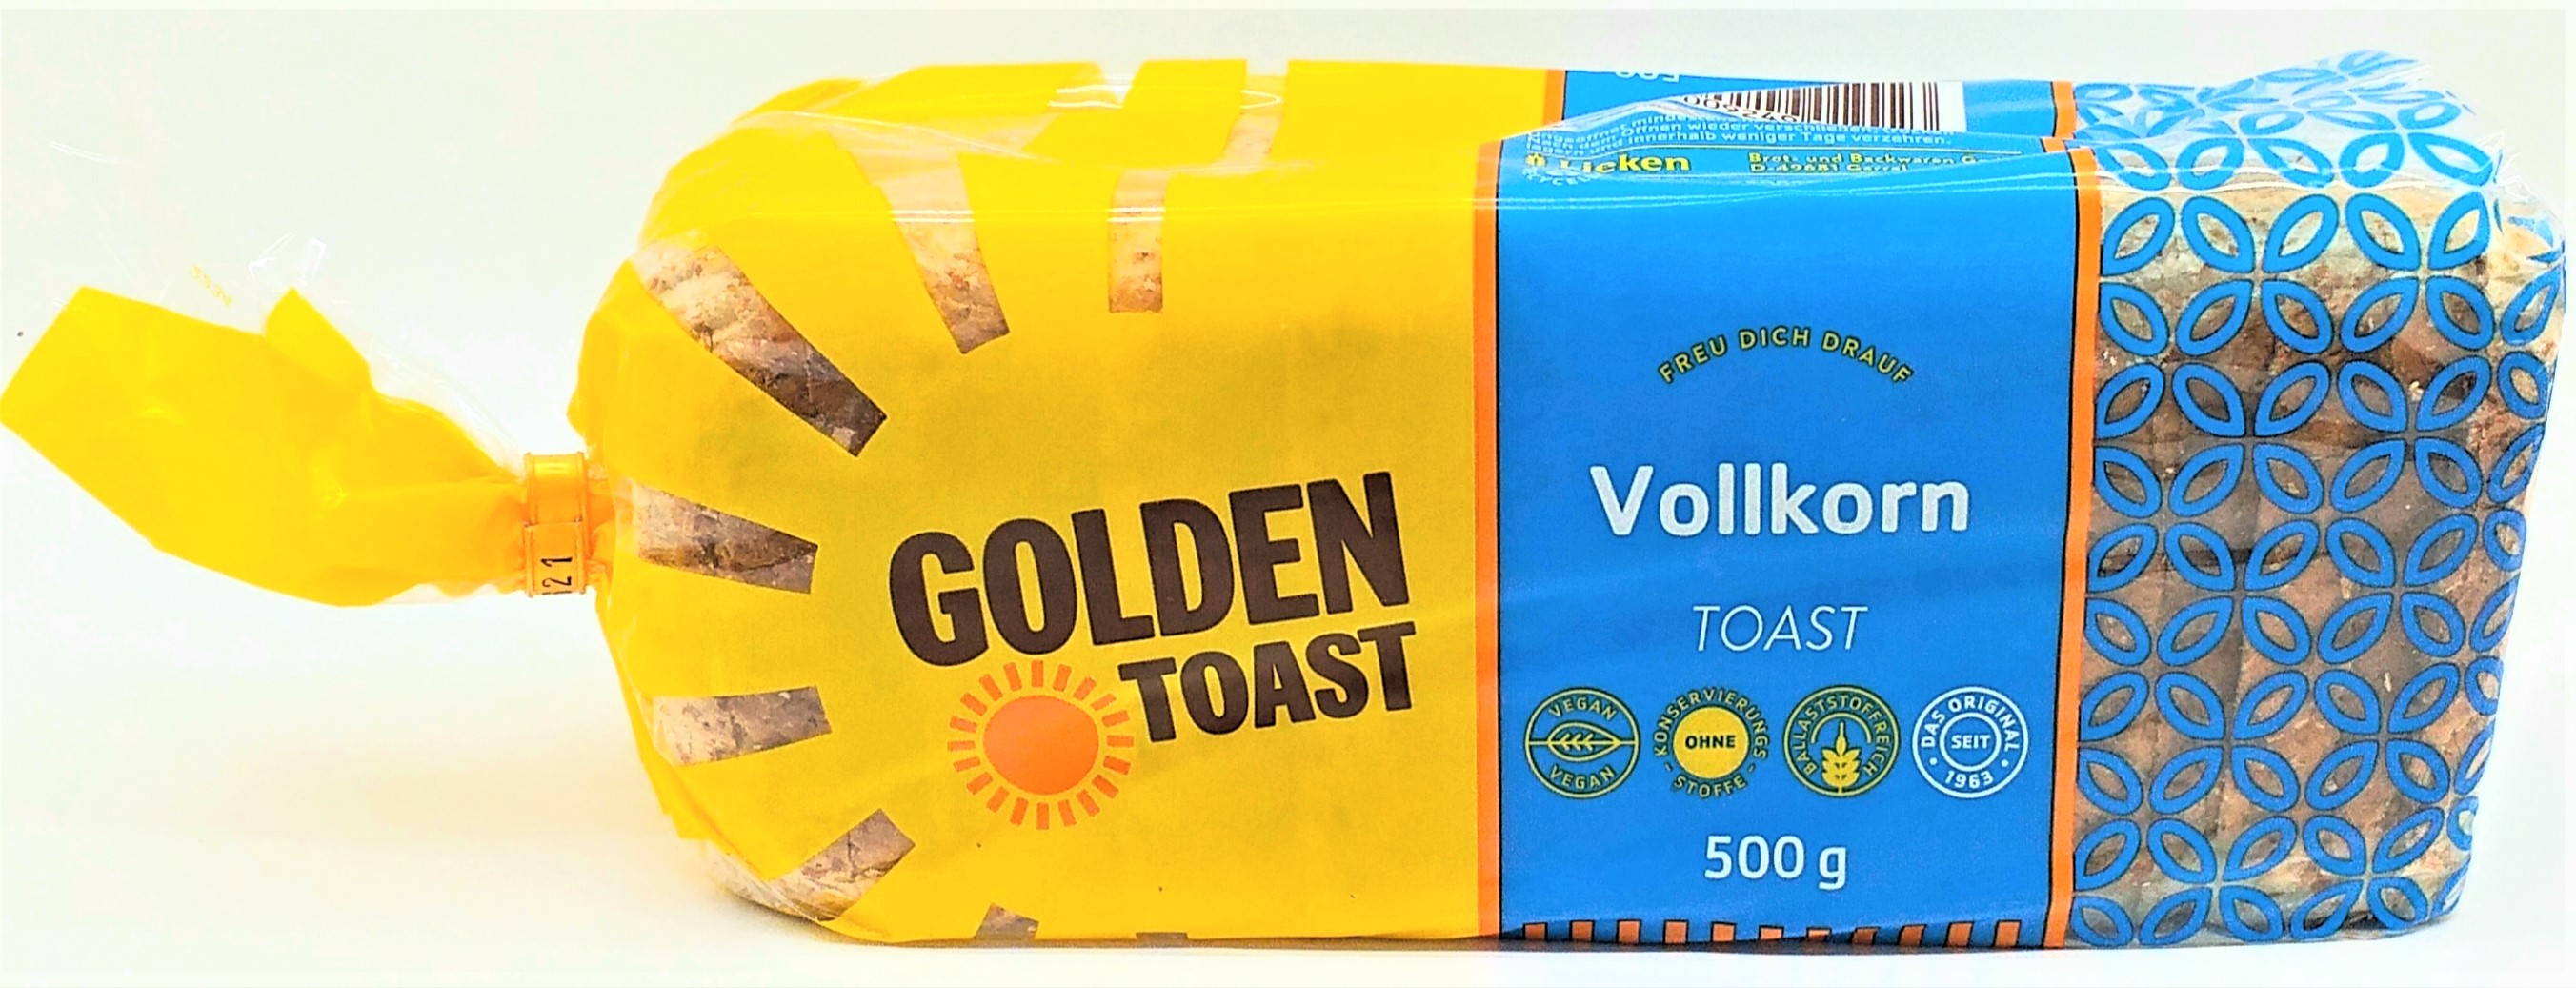 Golden Toast Vollkorn Toast 500g